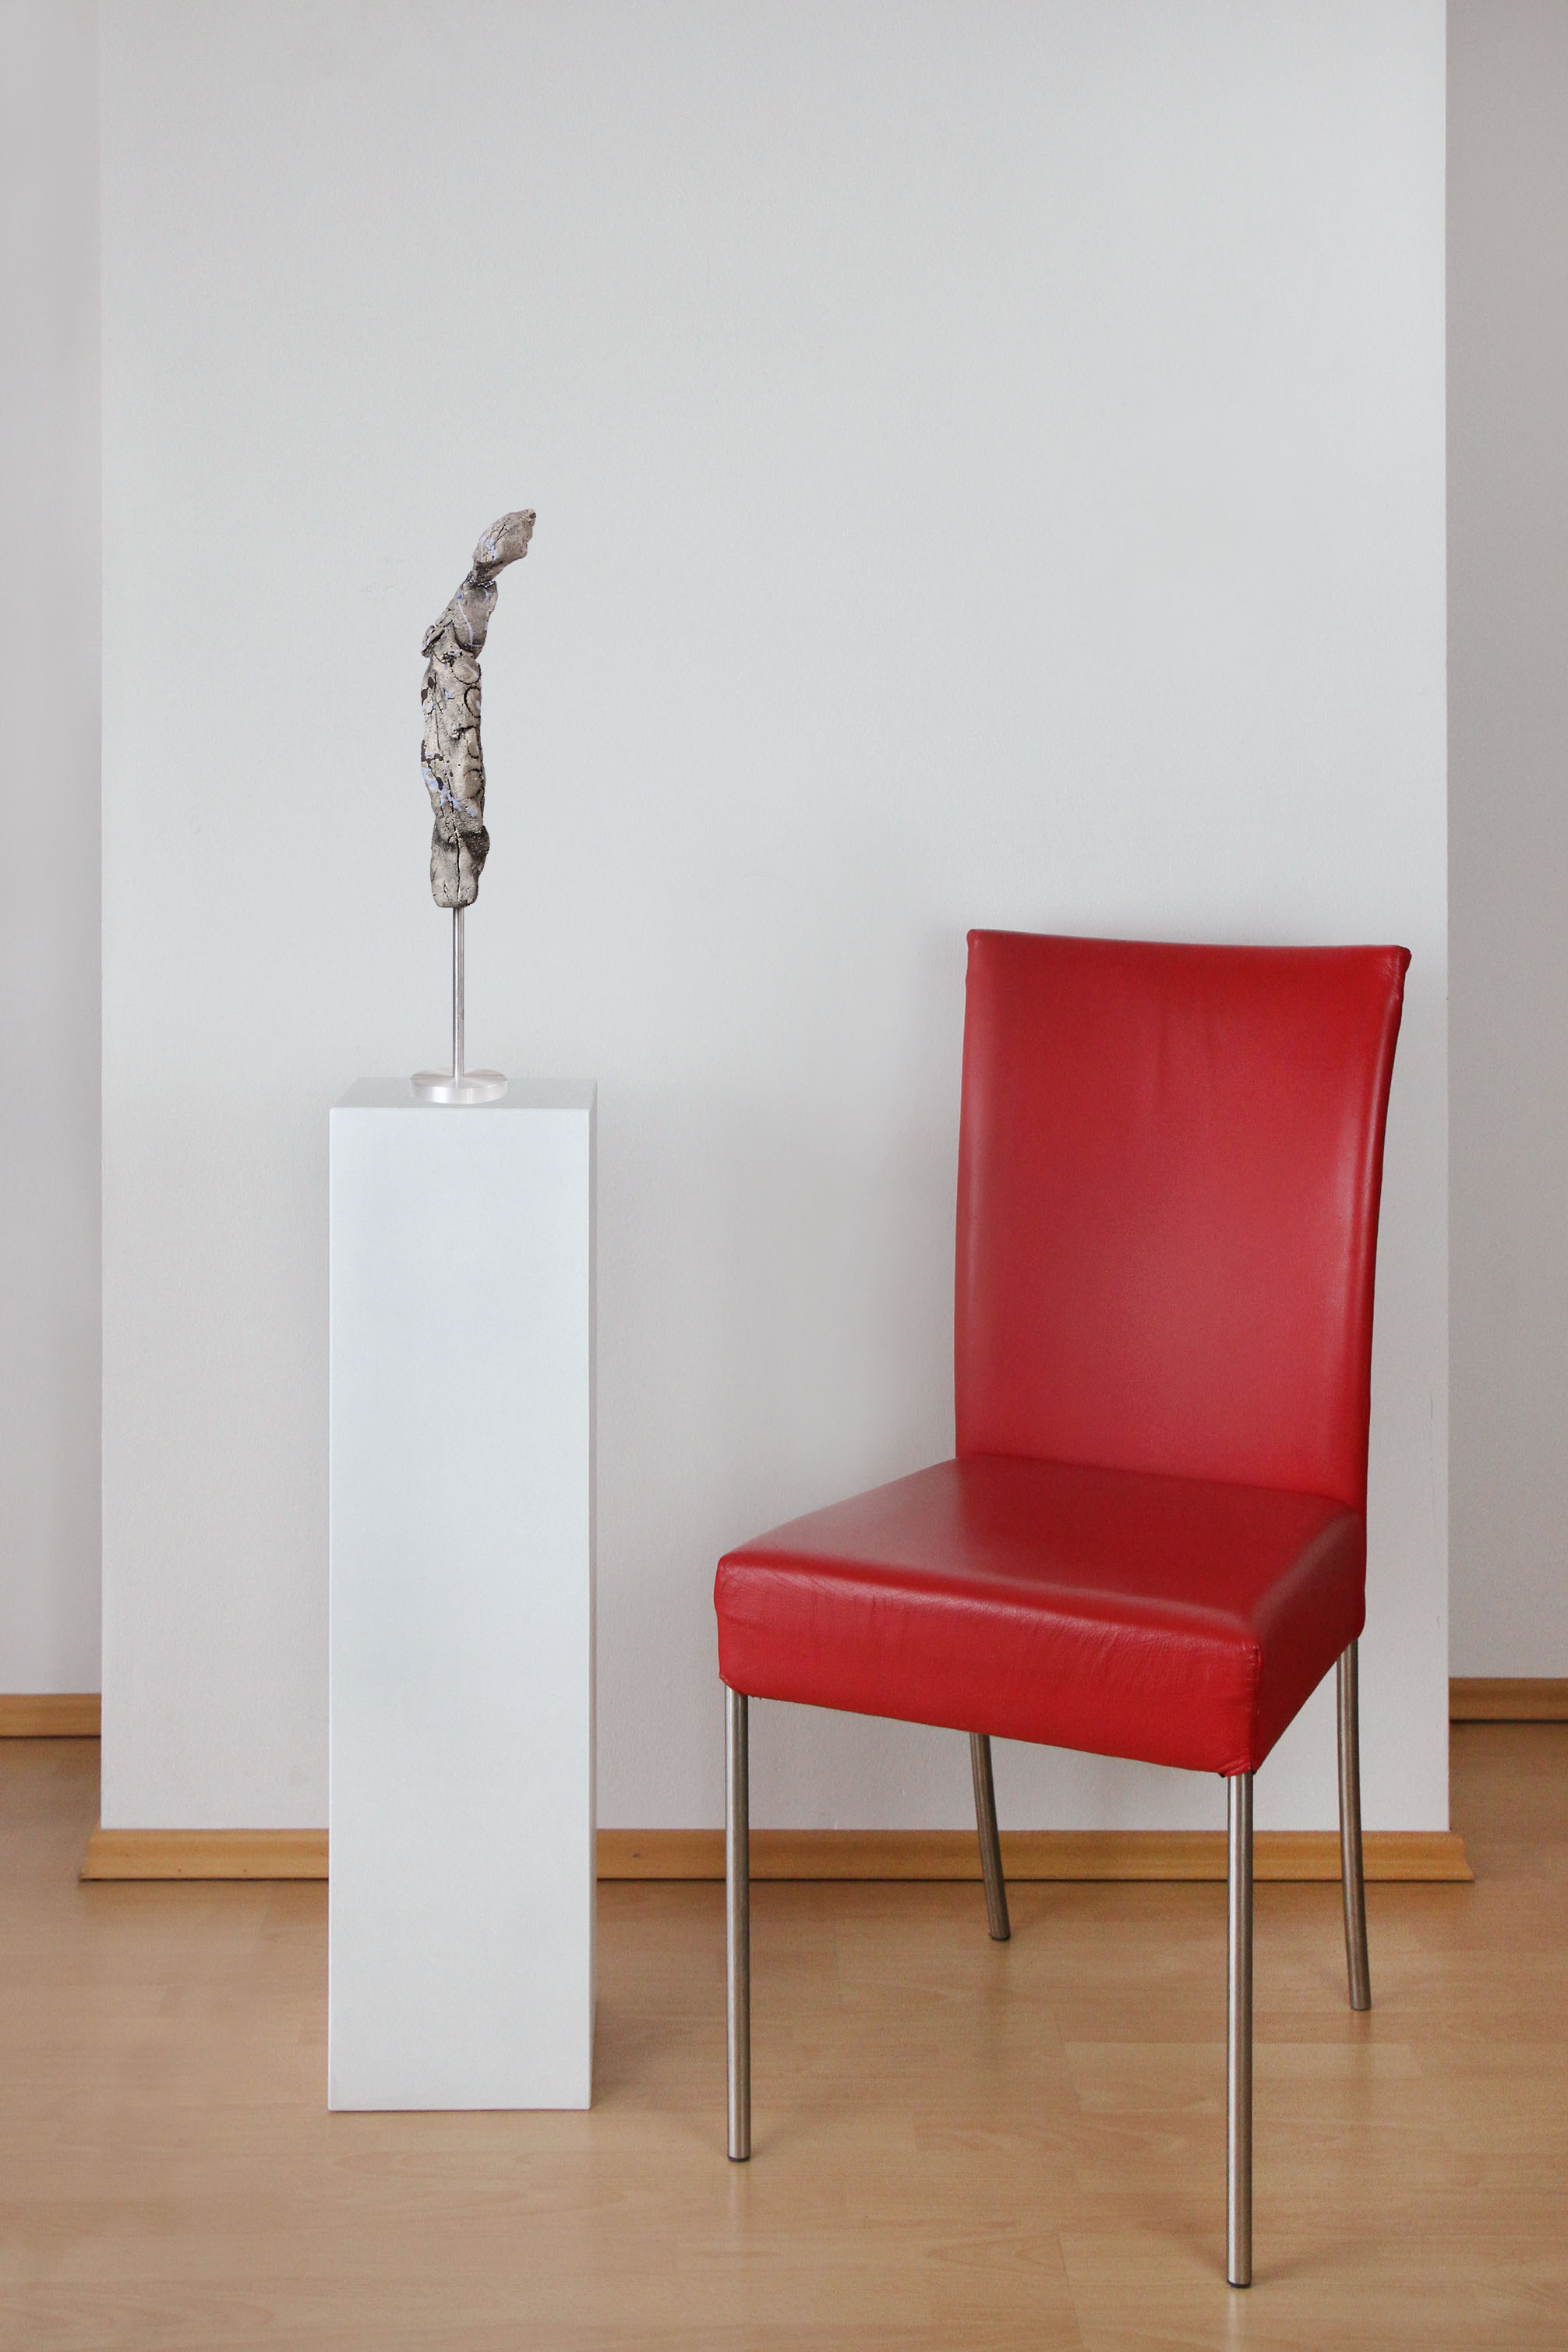 Zeitgenössische Skulptur, Ilona Schmidt: "Figur 3 vom Reigen" (A)